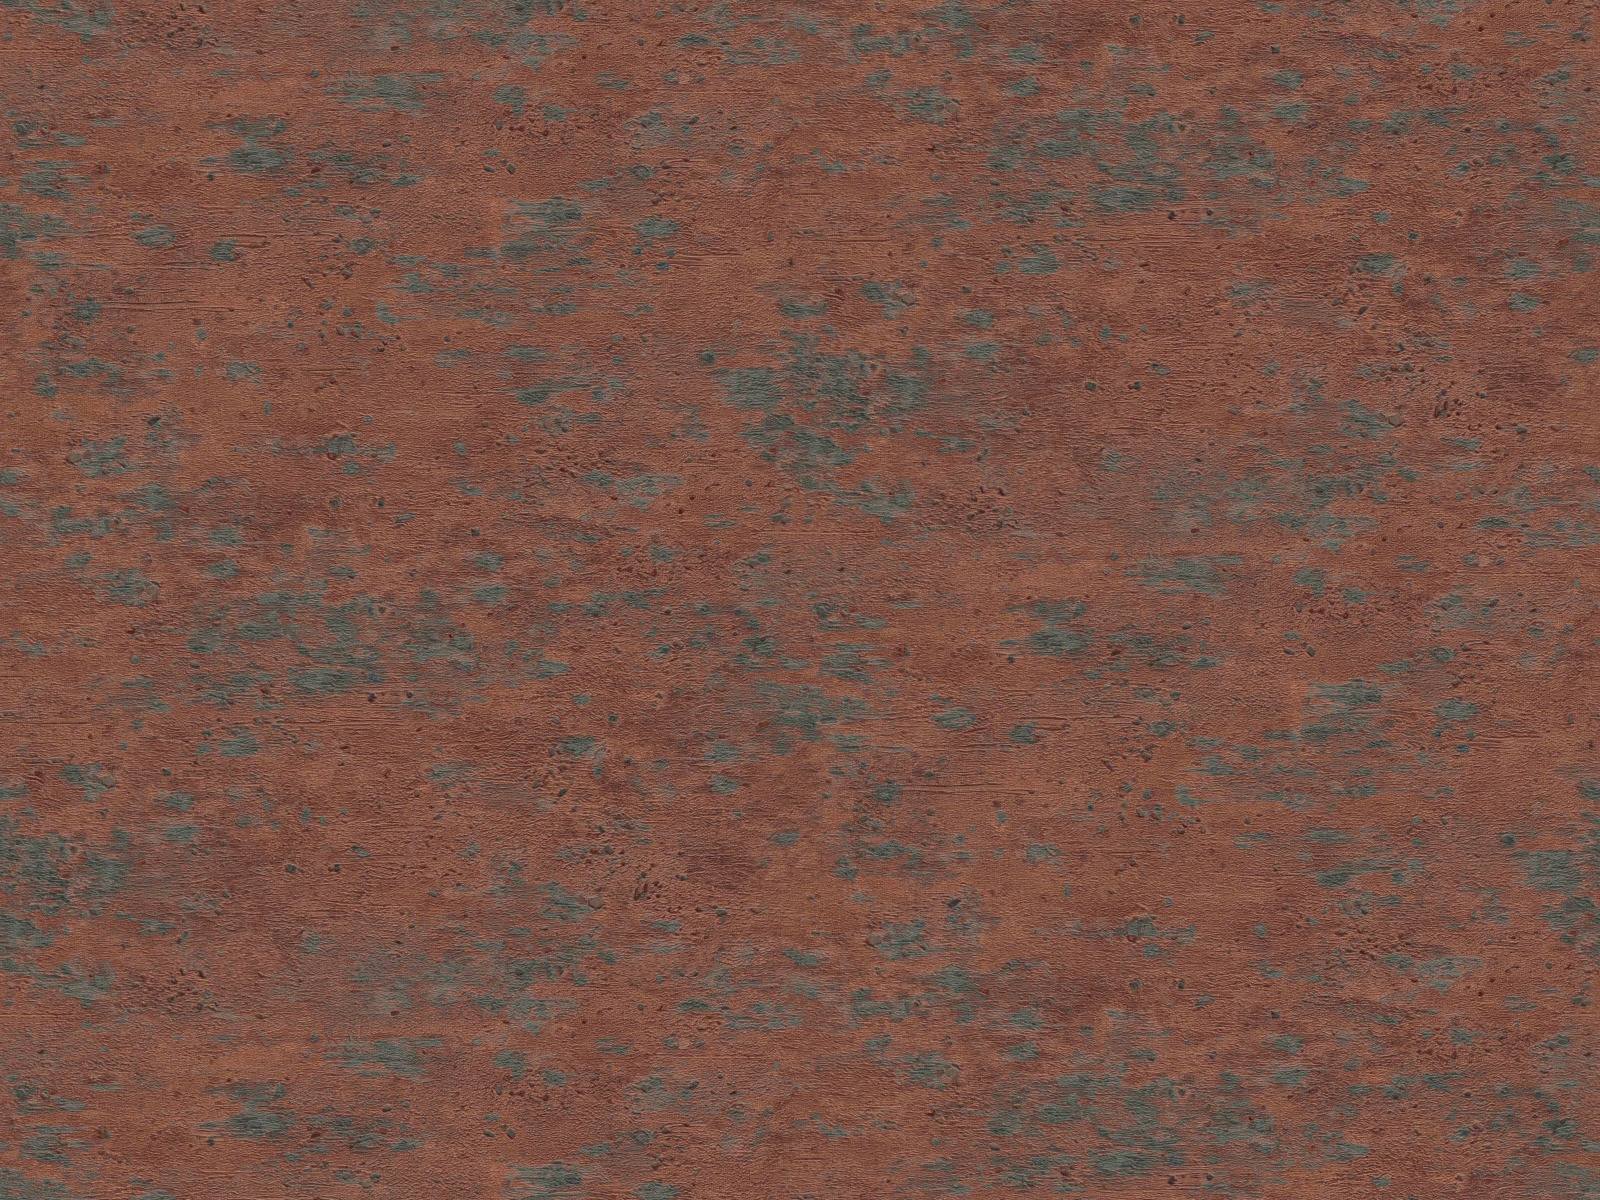 Vliesová tapeta imitujúca vulkanické horniny v medenej farbe, ER-601688